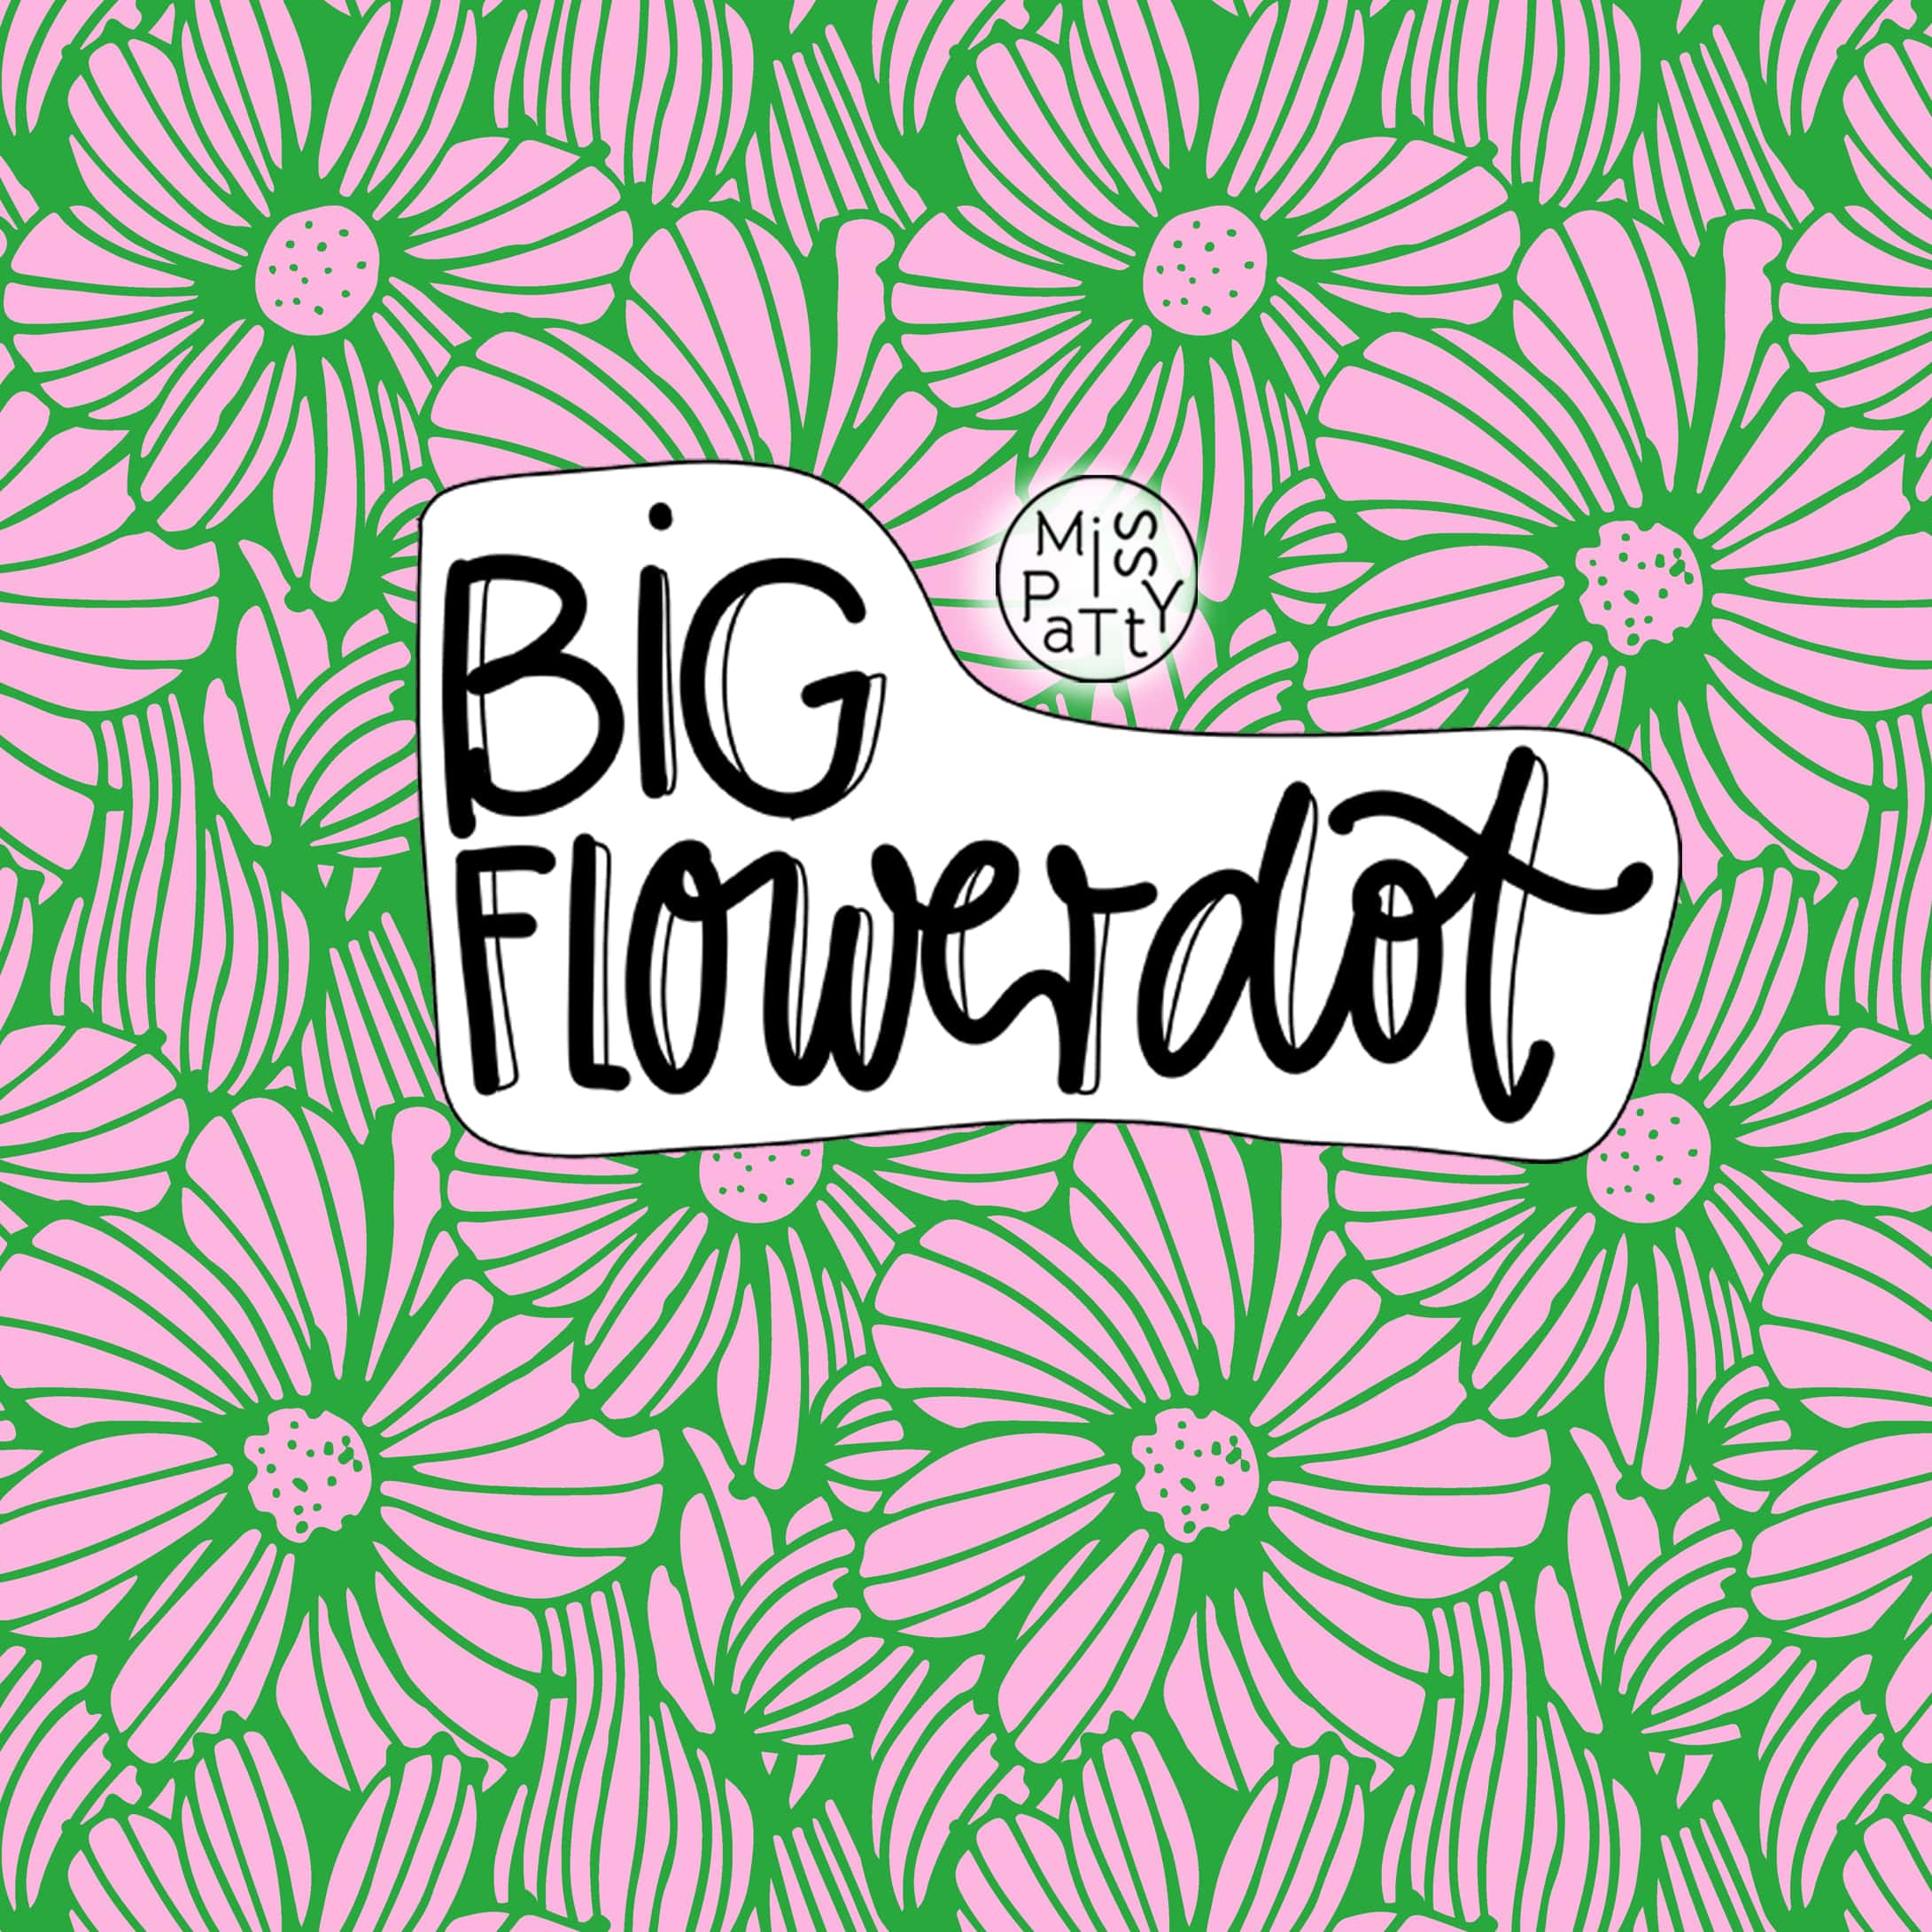 Big Flowerdot, Webware